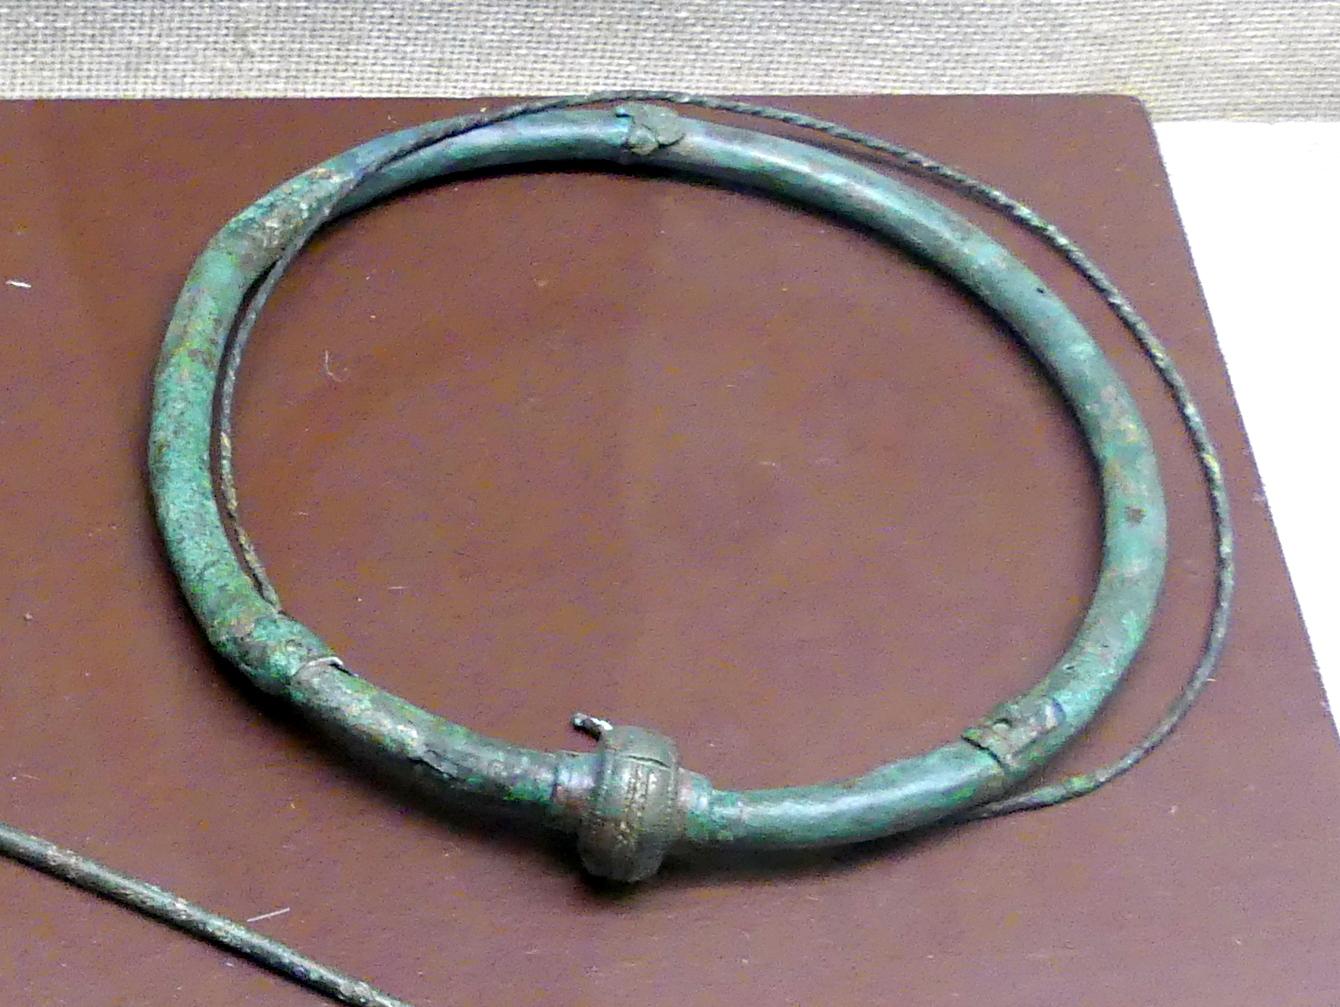 Hohlblechhalsring mit Steckverschluss, Frühlatènezeit, 700 - 100 v. Chr., Bild 1/2